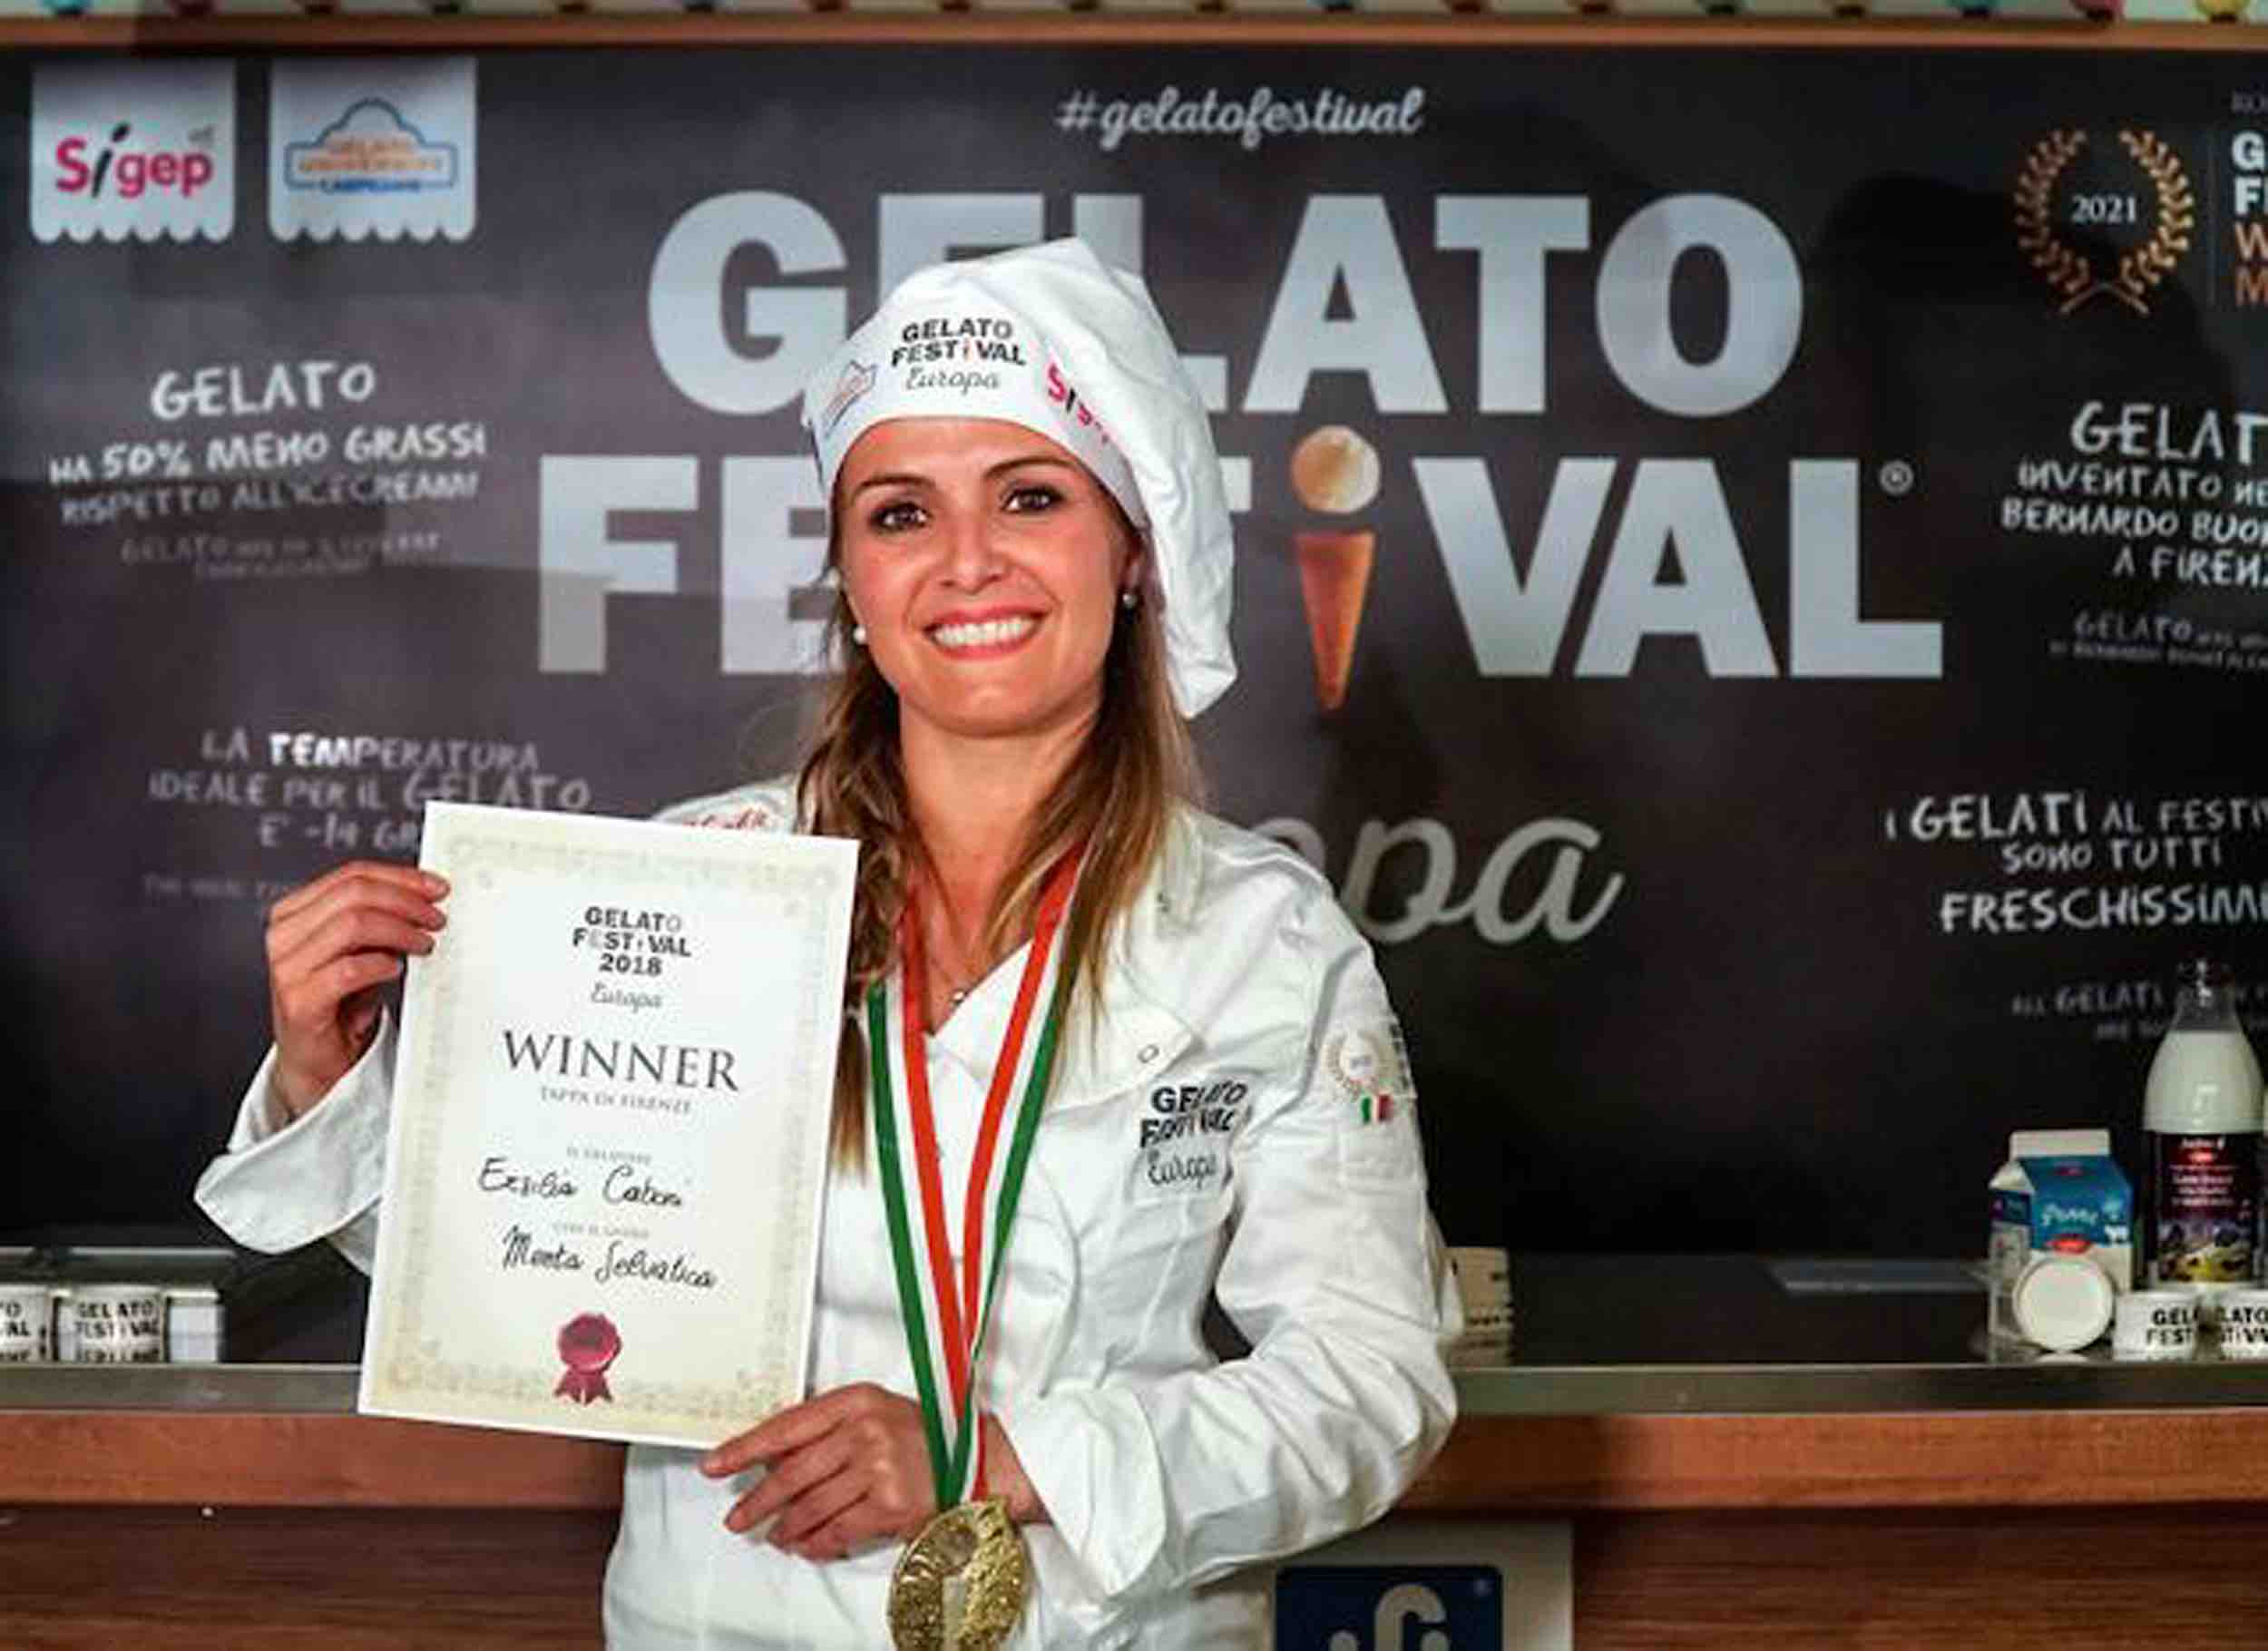 Ersilia Caboni è la vincitrice del Gelato Festival 2018 con il gusto "Menta Selvatica".